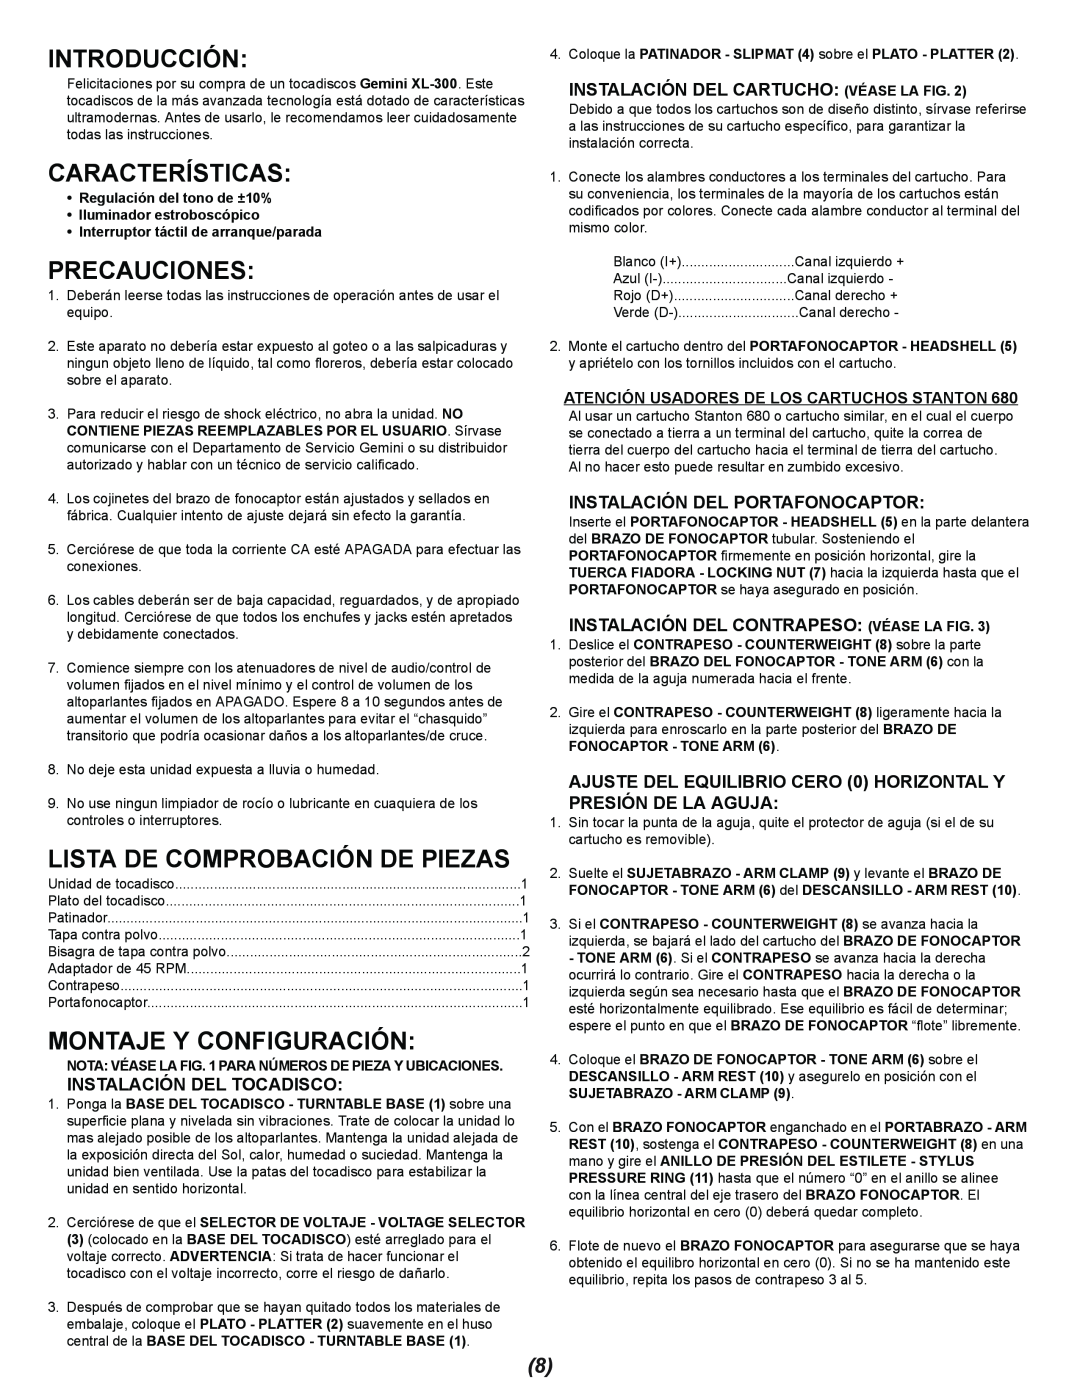 Gemini XL-300 manual Introducción, Características, Precauciones, Lista De Comprobación De Piezas, Montaje Y Configuración 